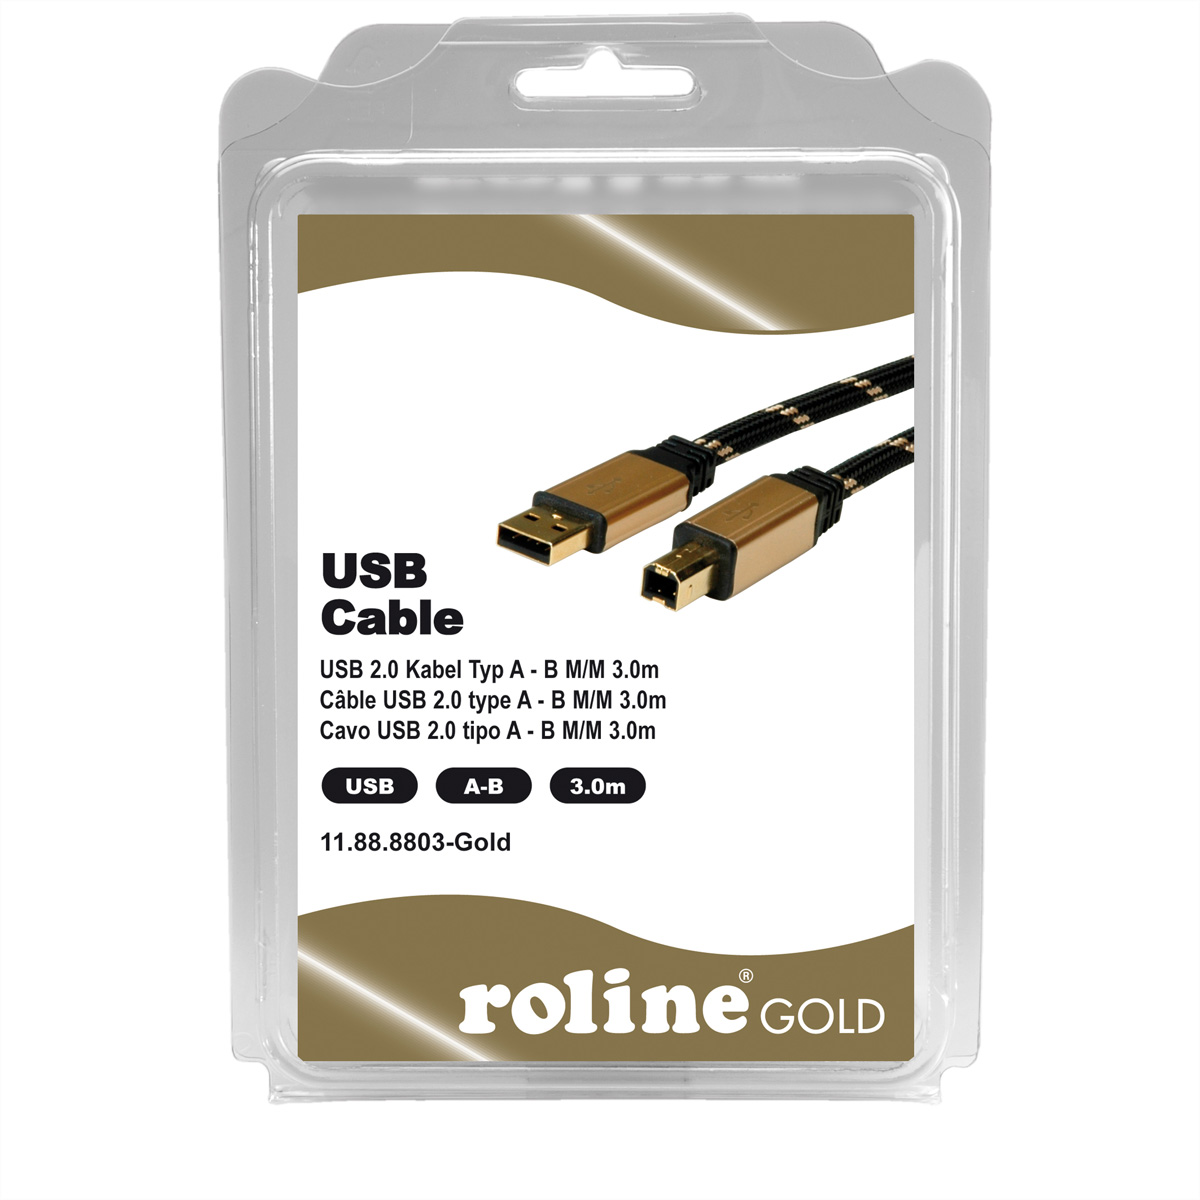 USB Kabel, GOLD Kabel 2.0 USB Typ A-B 2.0 ROLINE